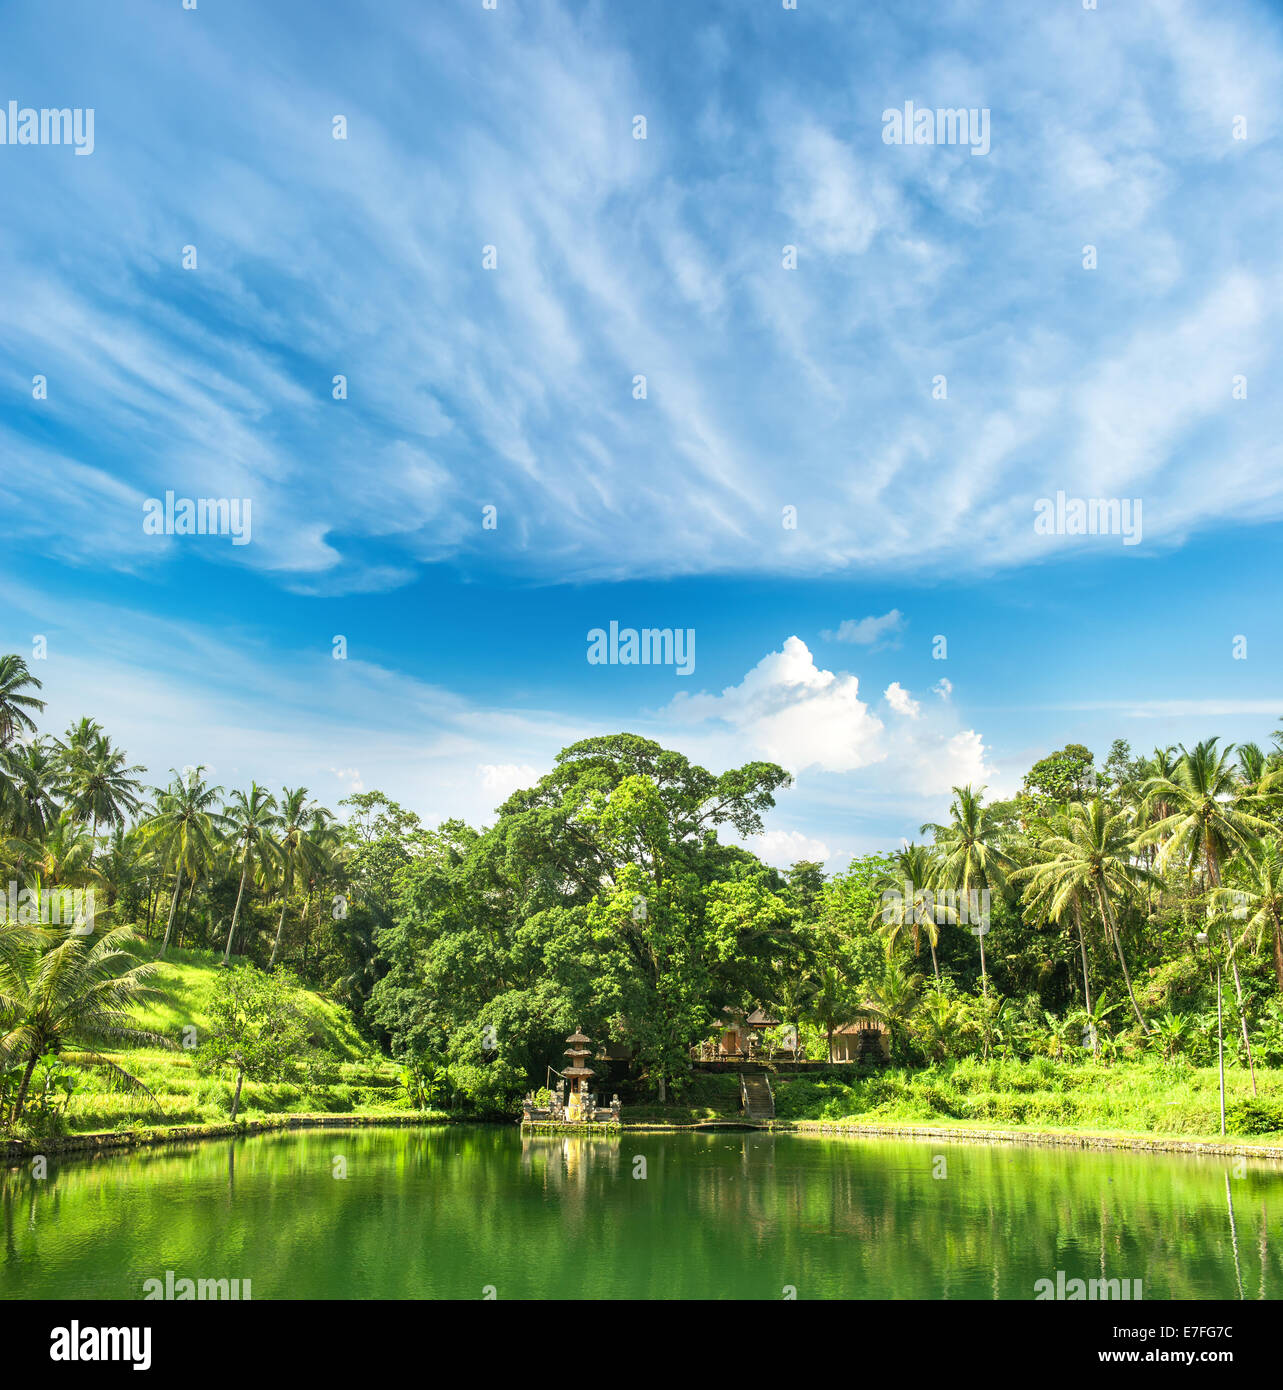 Lac Paradis avec palmiers et ciel bleu nature paysage tropical.. Ubud, Bali, Indonésie Banque D'Images